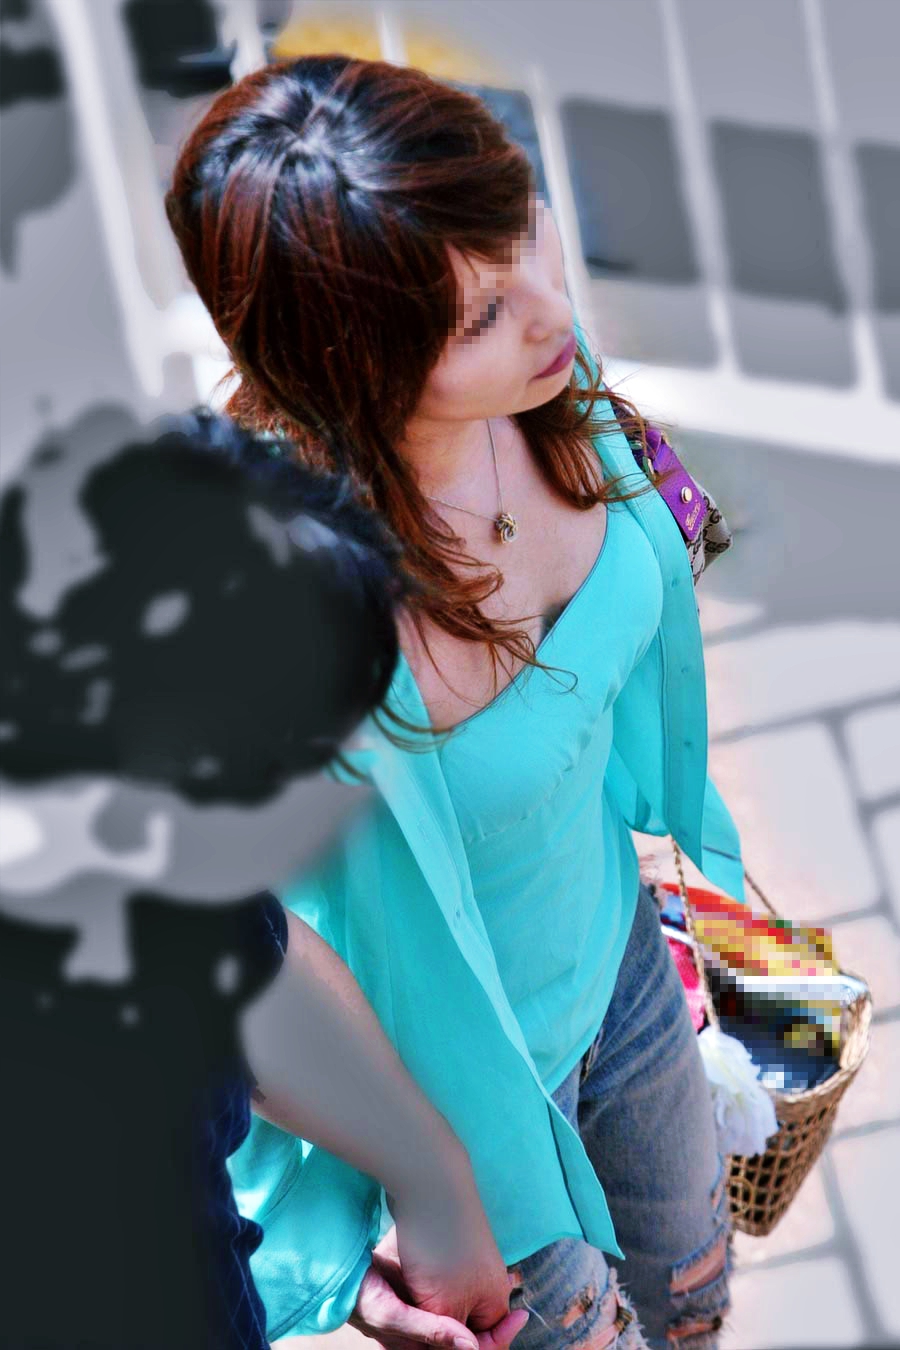 谷間みえっぱなしや着衣巨乳がエッチな女子の街撮り素人エロ画像-011